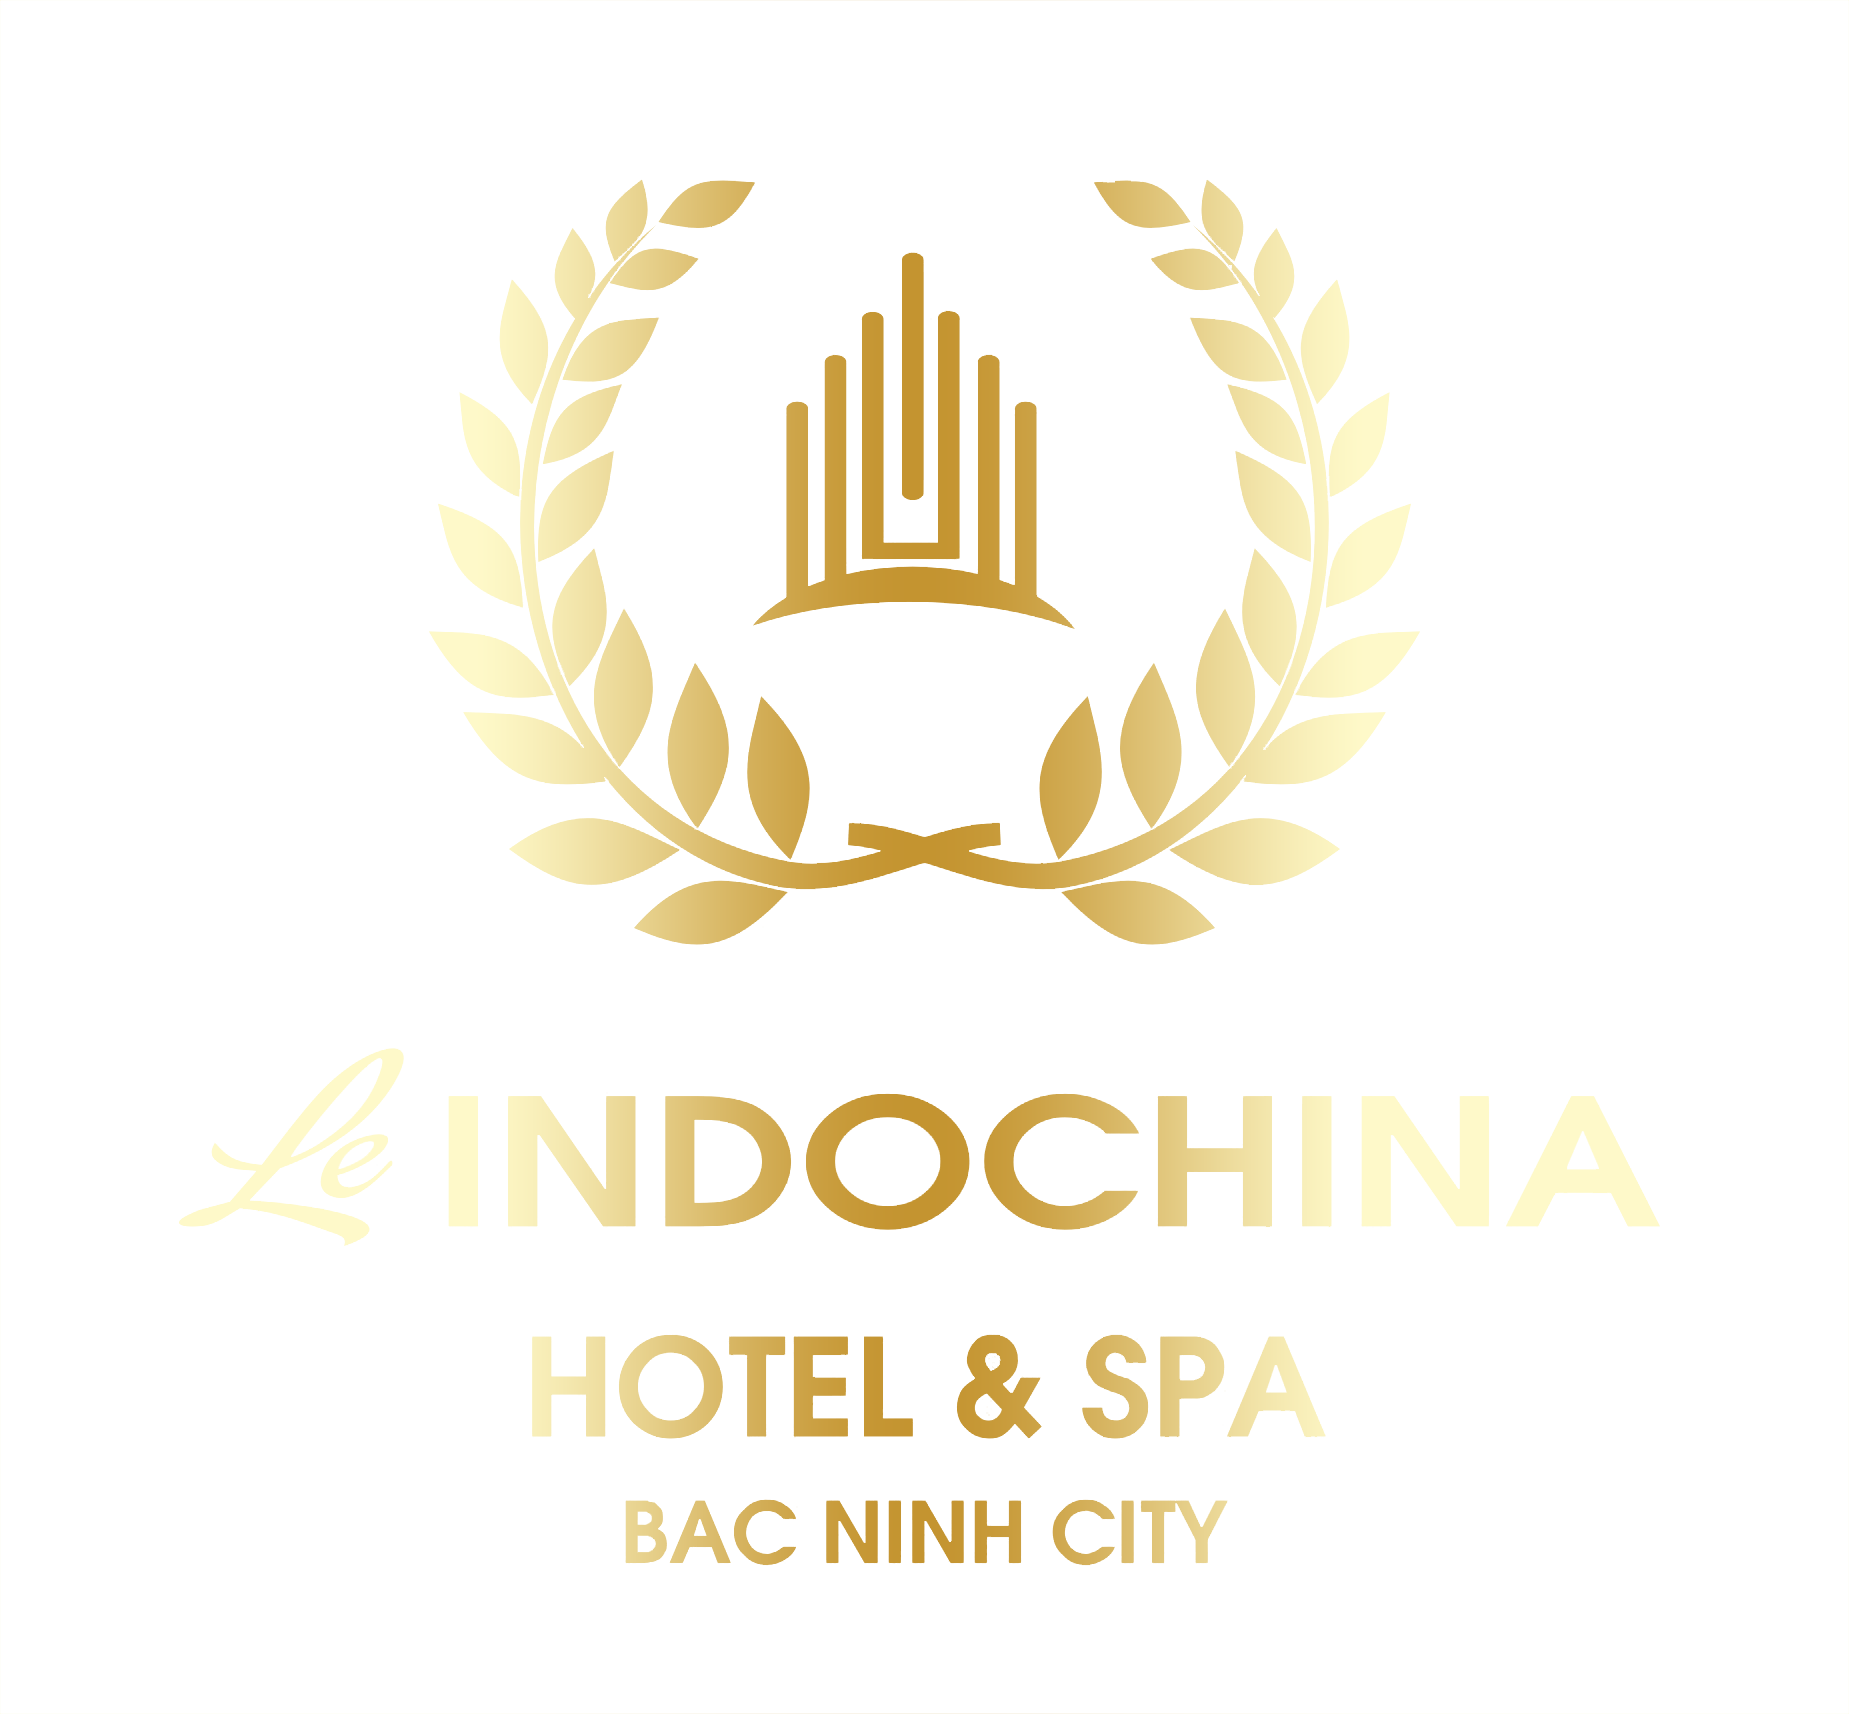 Le Indochina Hotel & Spa